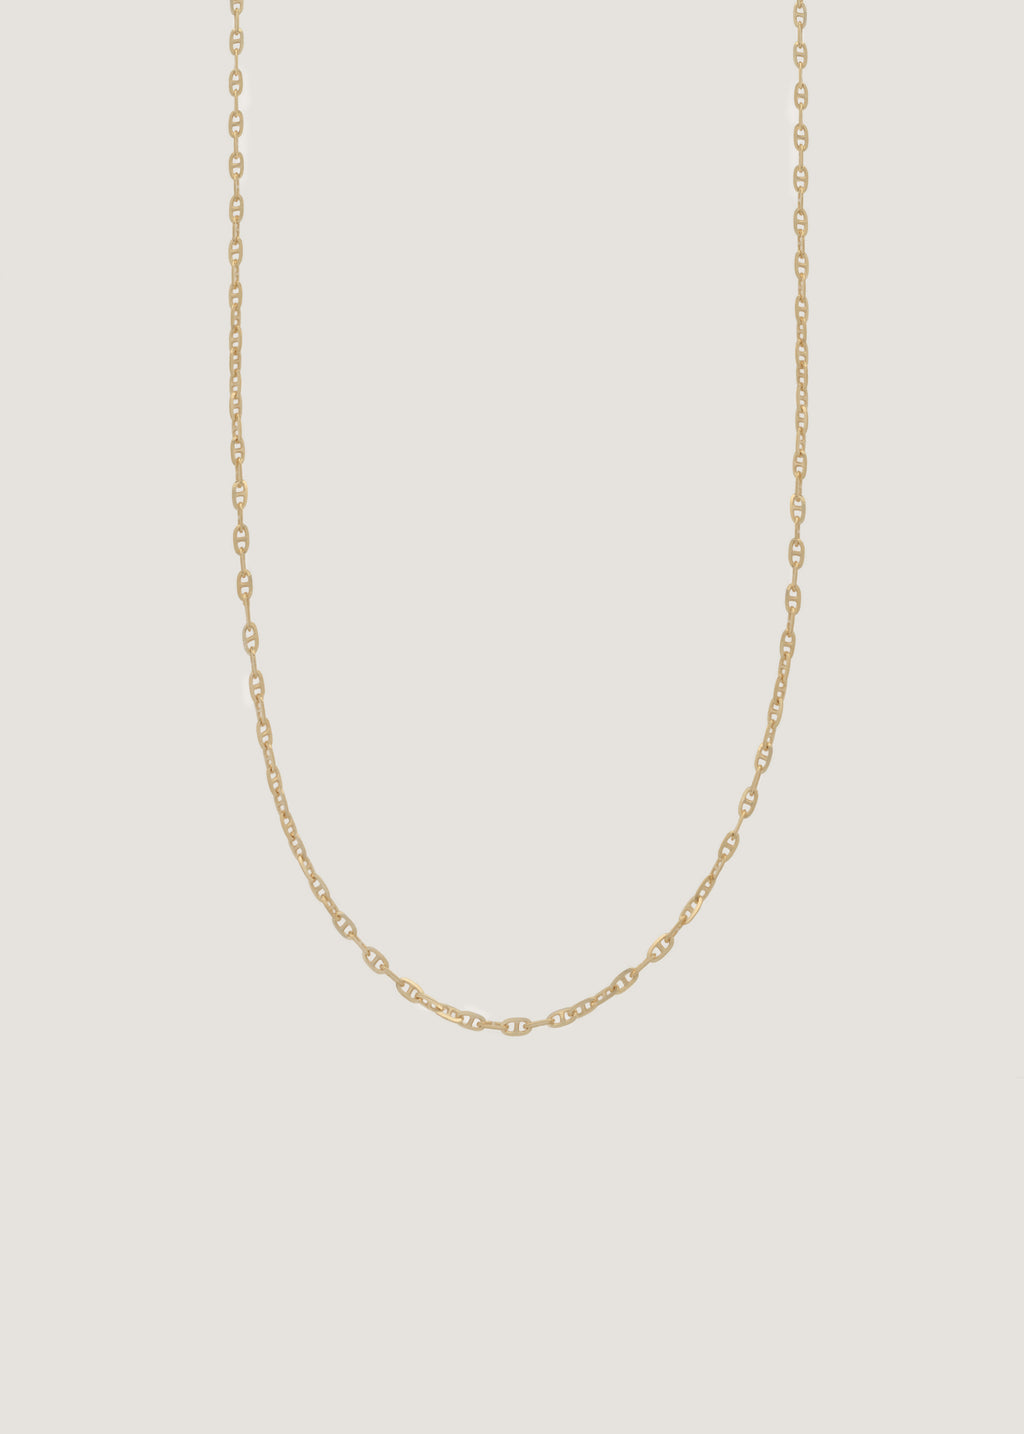 alt="Mariner Chain Necklace"